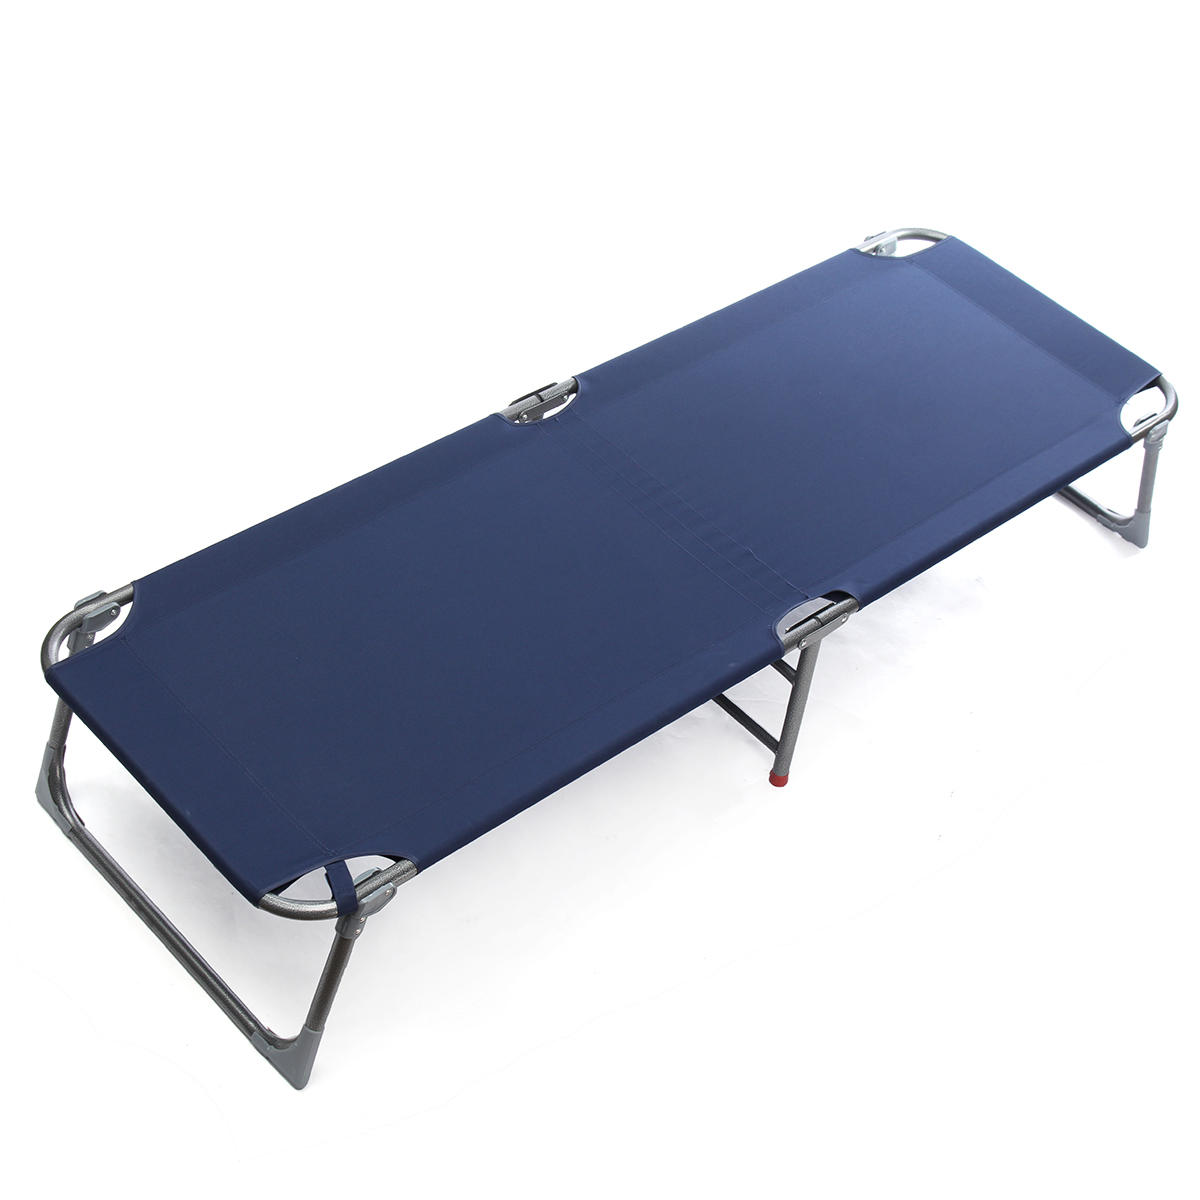 Cama dobrável portátil para acampamento ao ar livre, para descanso durante o dia, cadeira reclinável